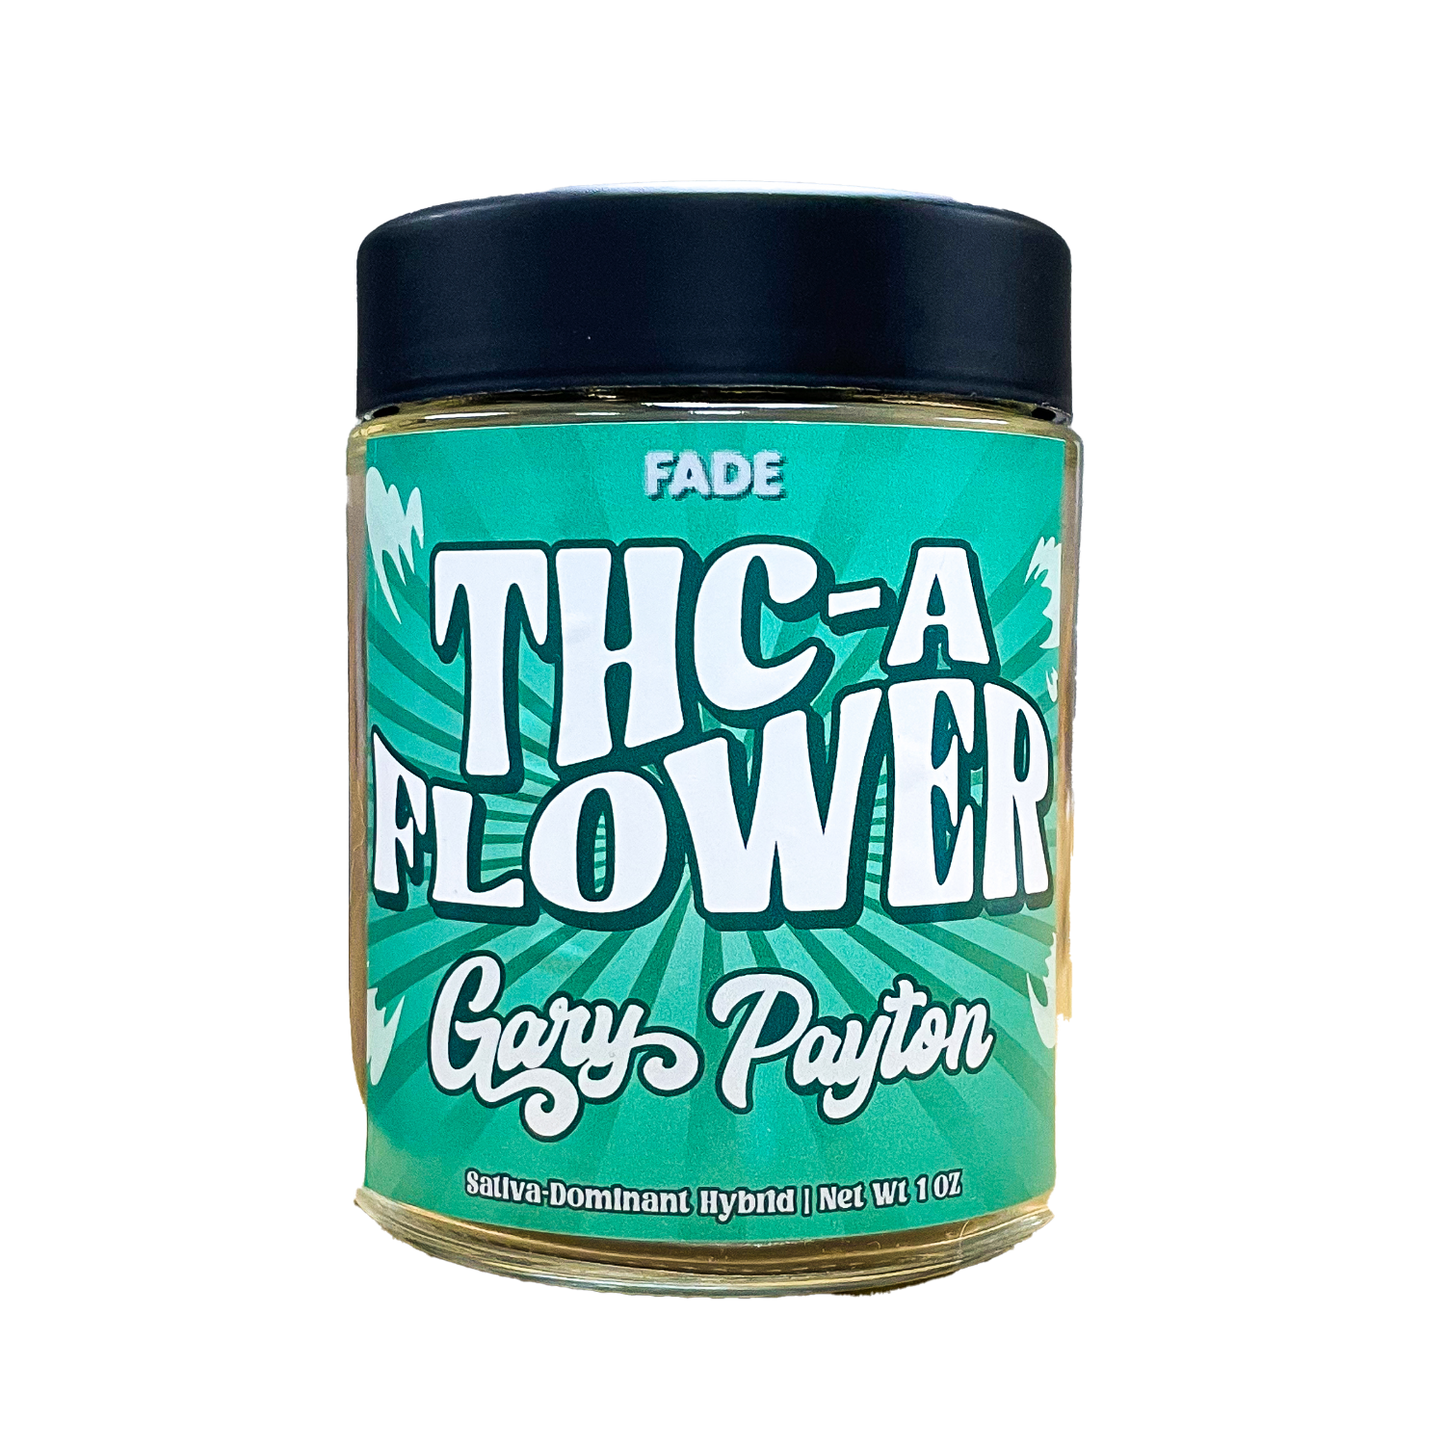 FADE THC-A Flower (1 oz/28G)